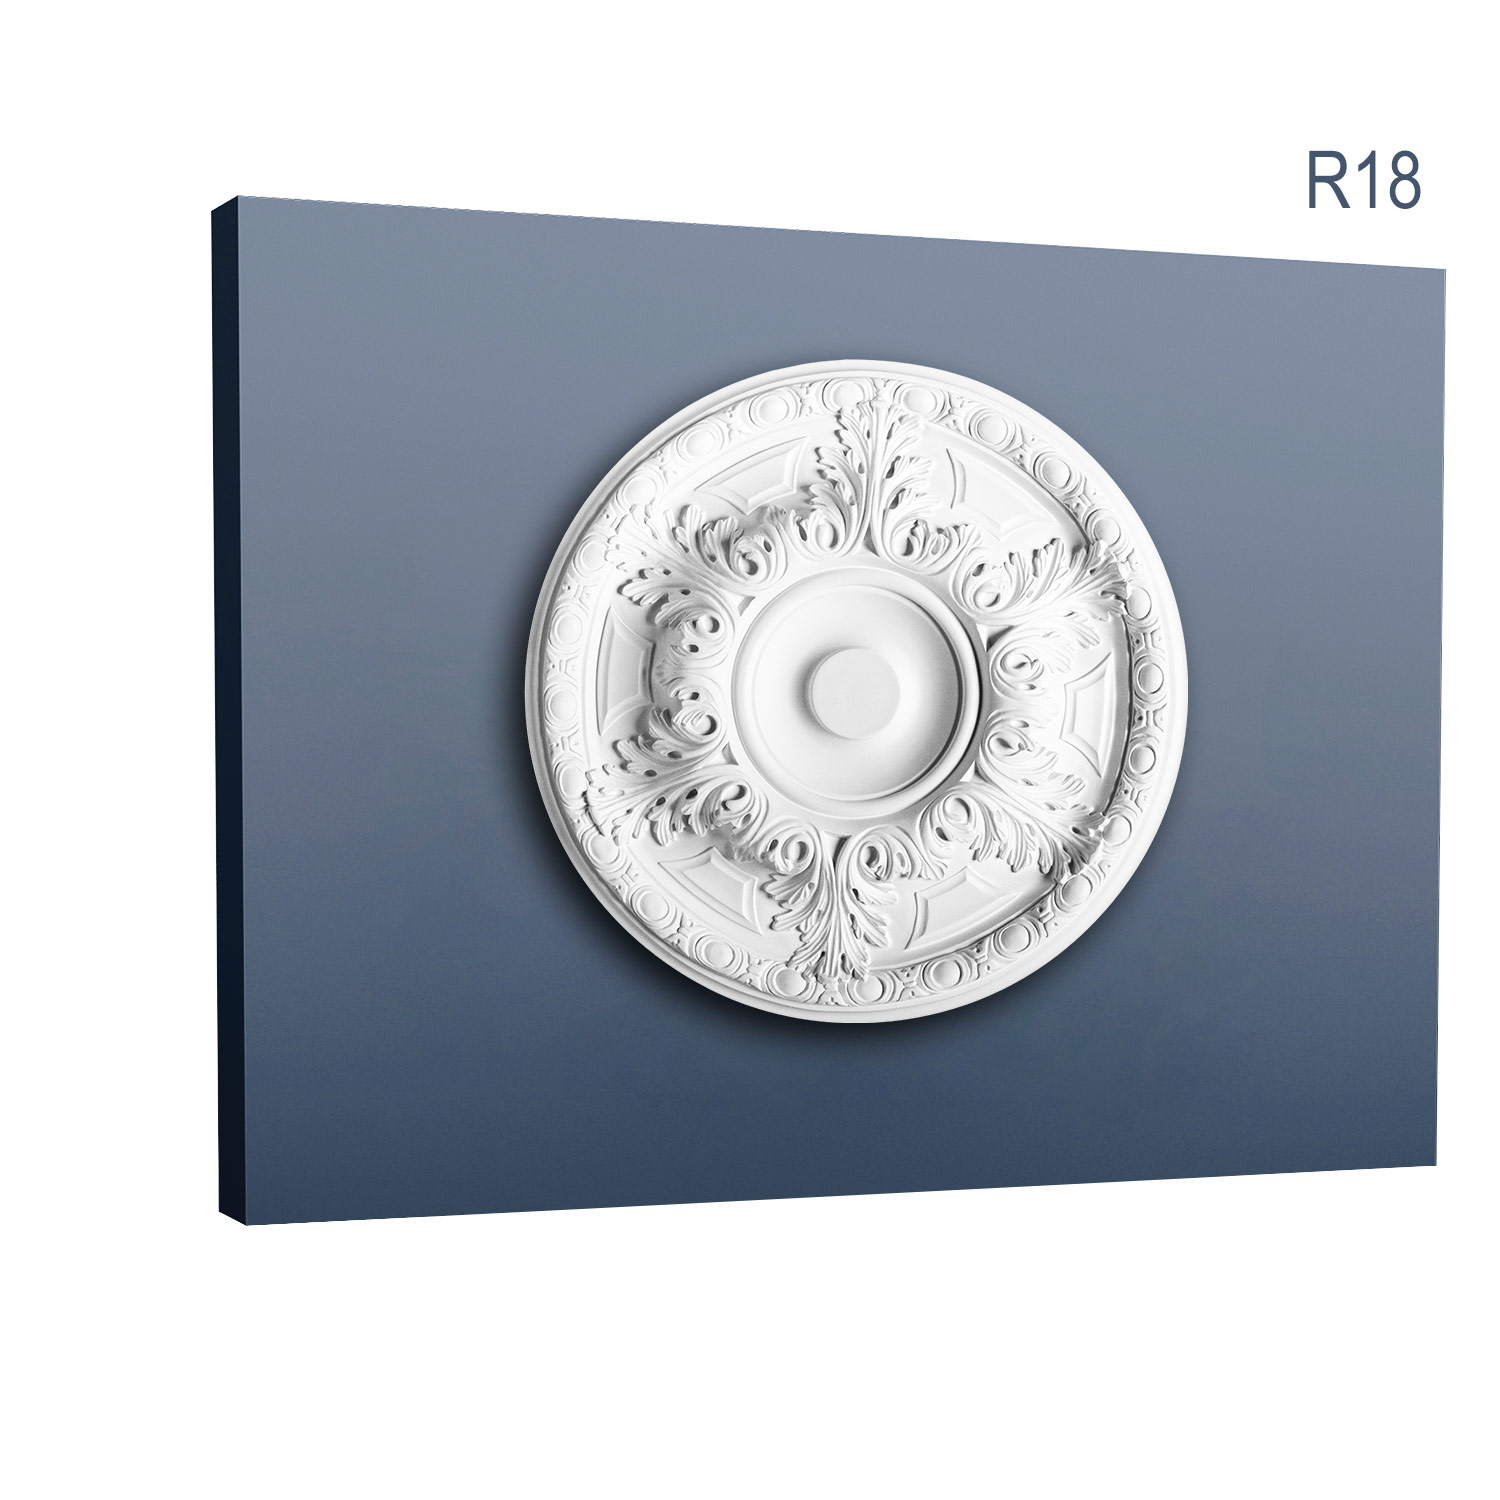 Rozeta Luxxus R18, Dimensiuni: diam. 49 cm (H: 4,7 cm), Orac Decor Orac Decor